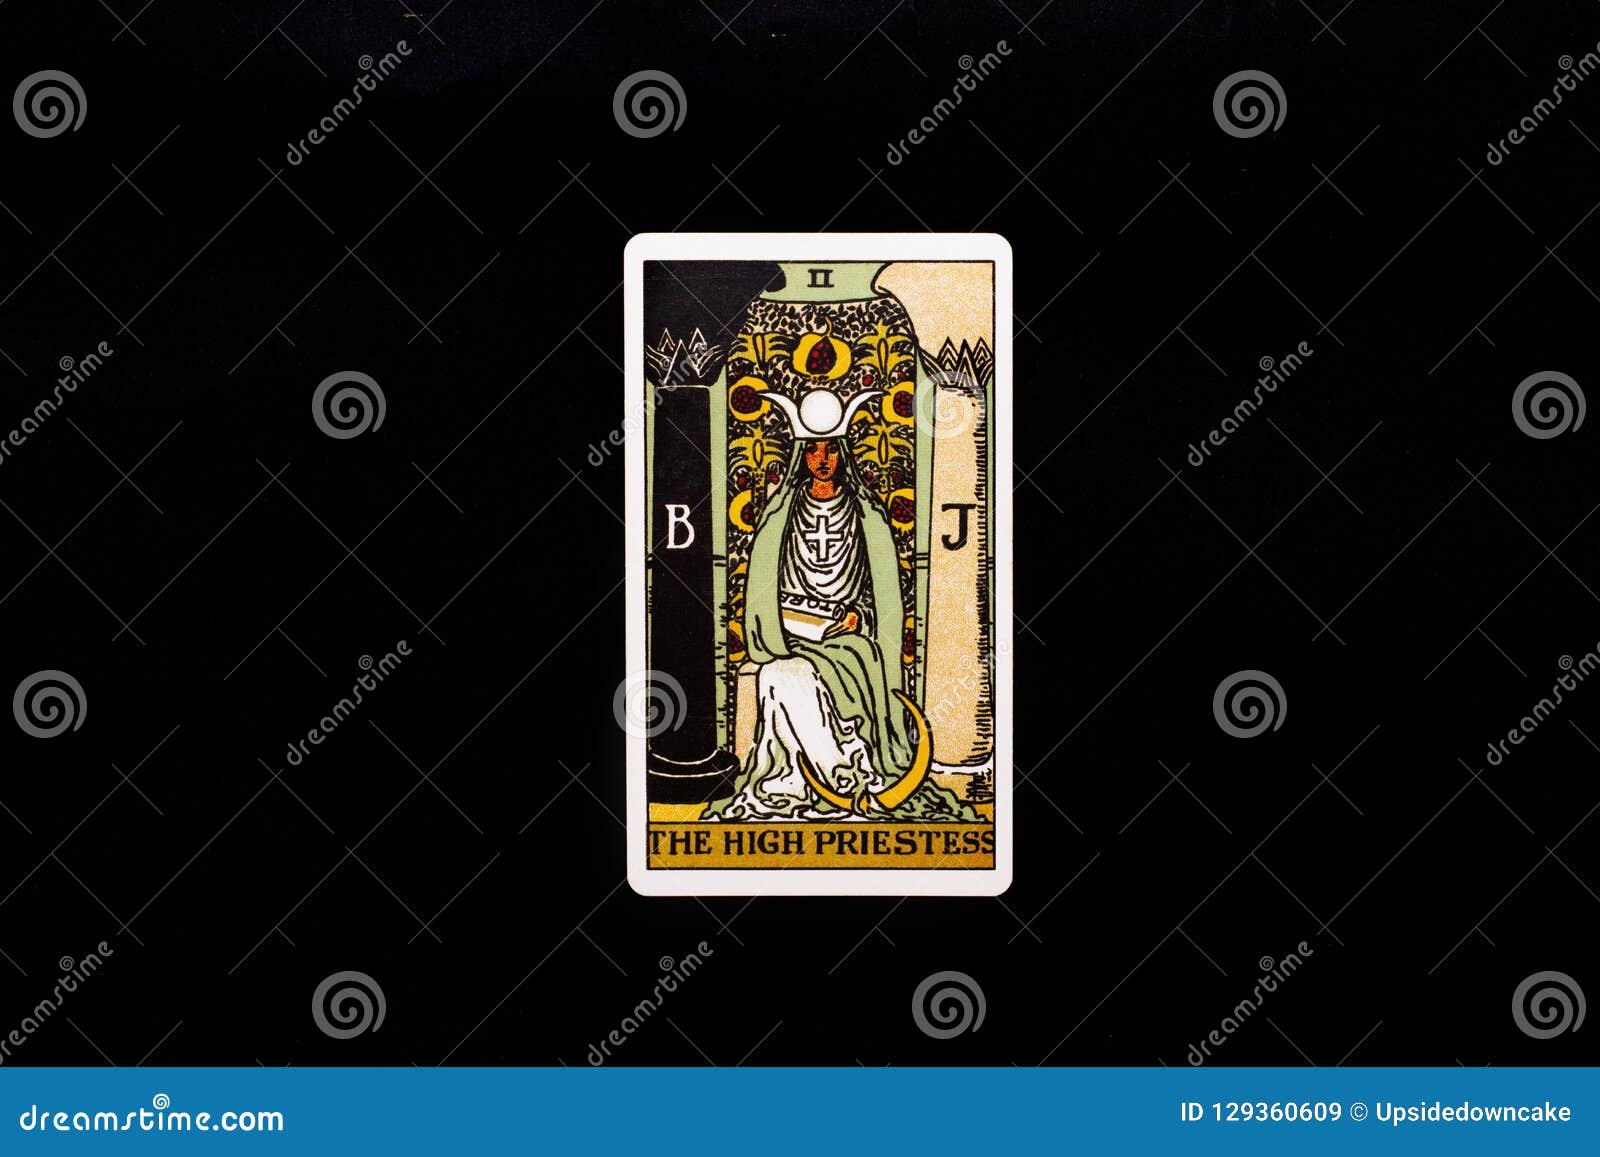 the high priestess major arcana tarot card